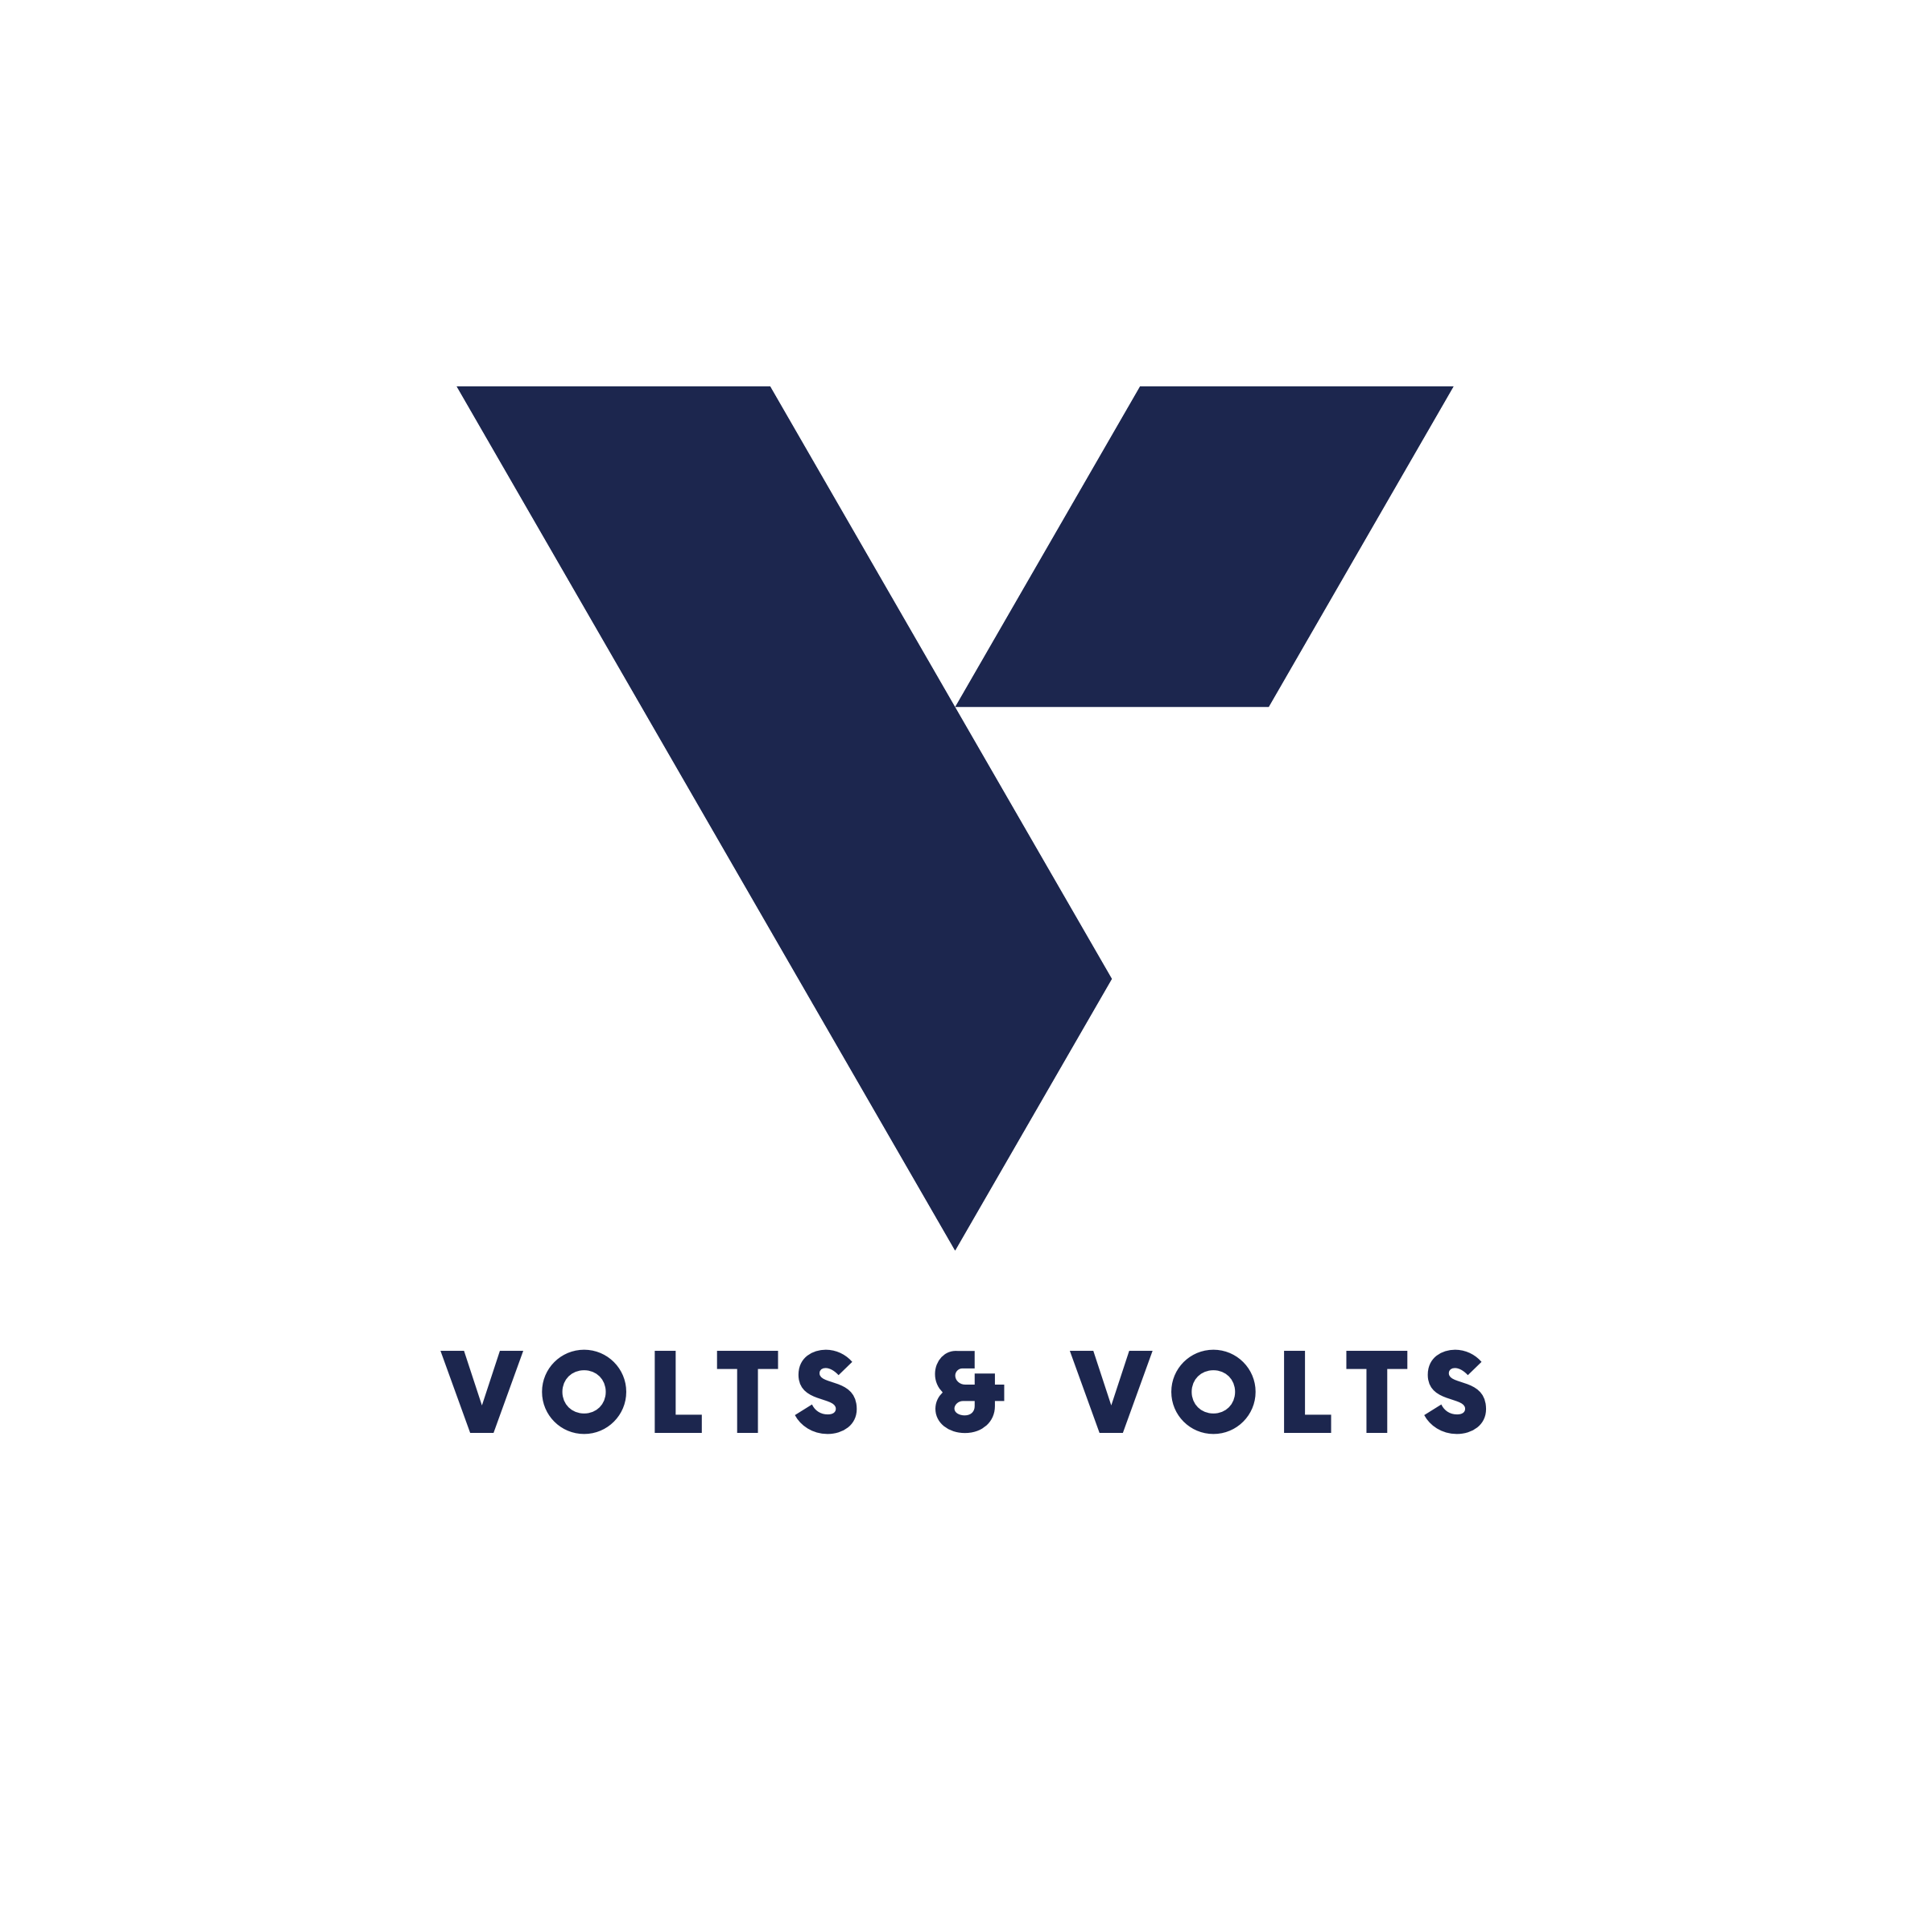 Volts & Volts Logo Dark Transparent